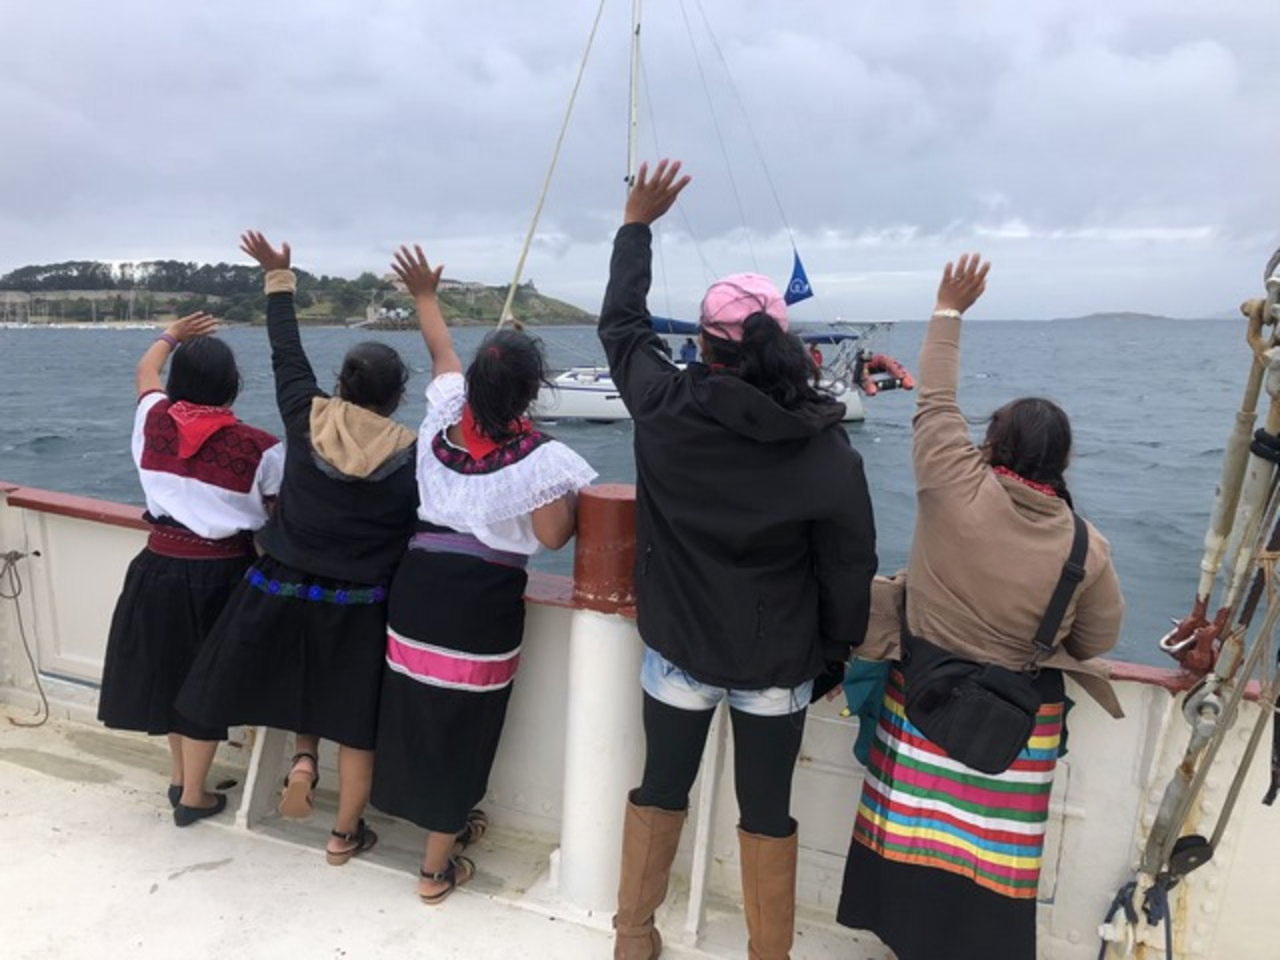 “Llegamos”: Los zapatistas arriban a España tras casi dos meses de viaje en barco